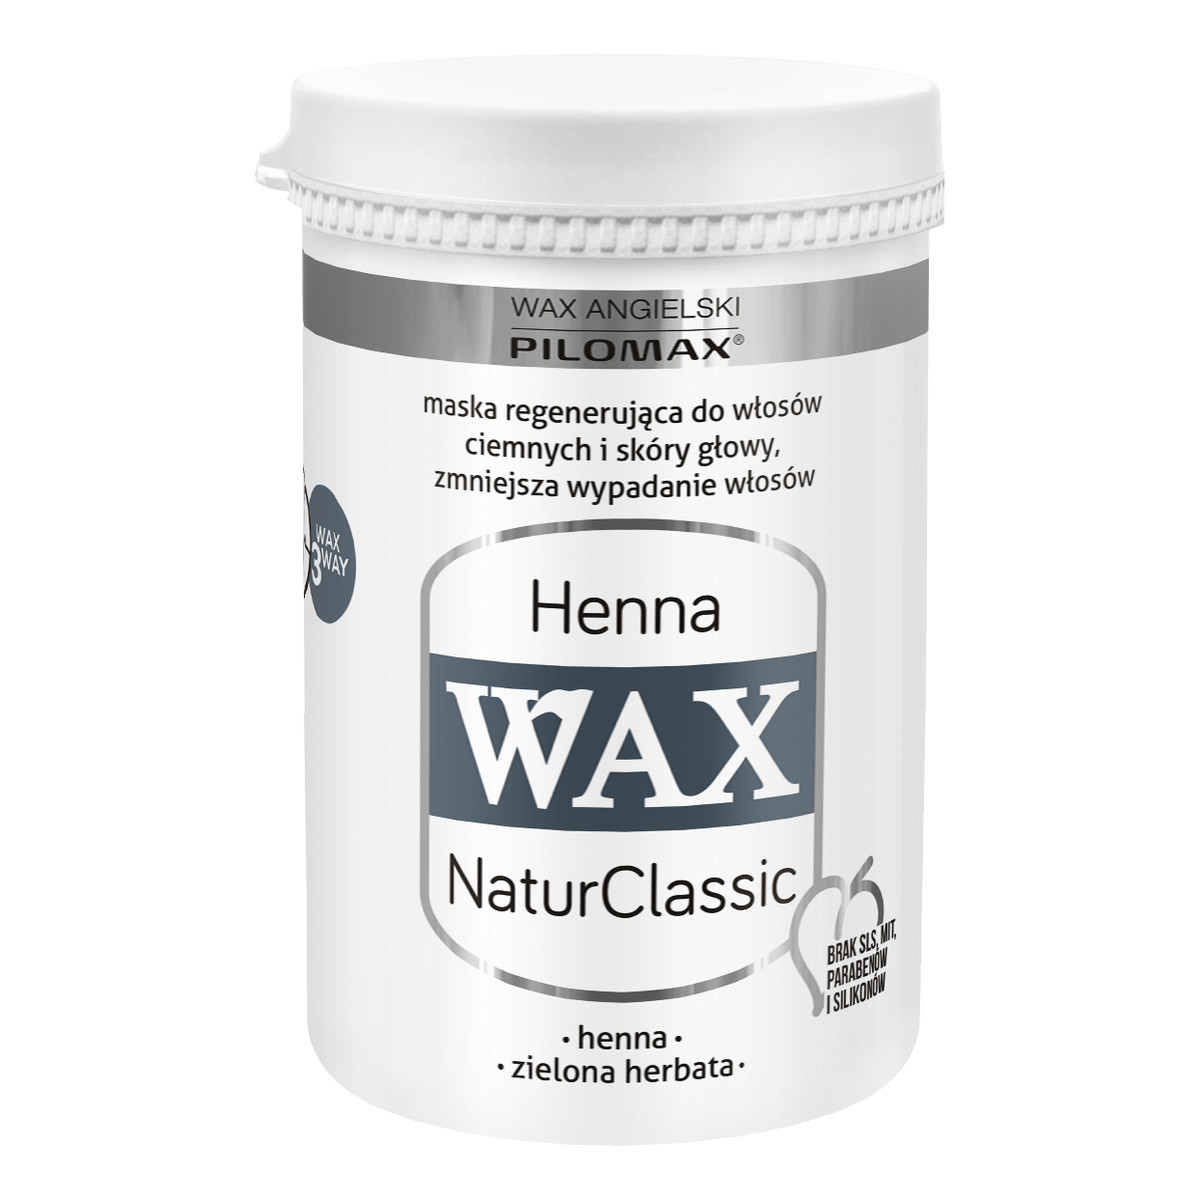 Pilomax Wax Henna Natur Classic Maska Regenerujaca Do Włosów Ciemnych 480ml